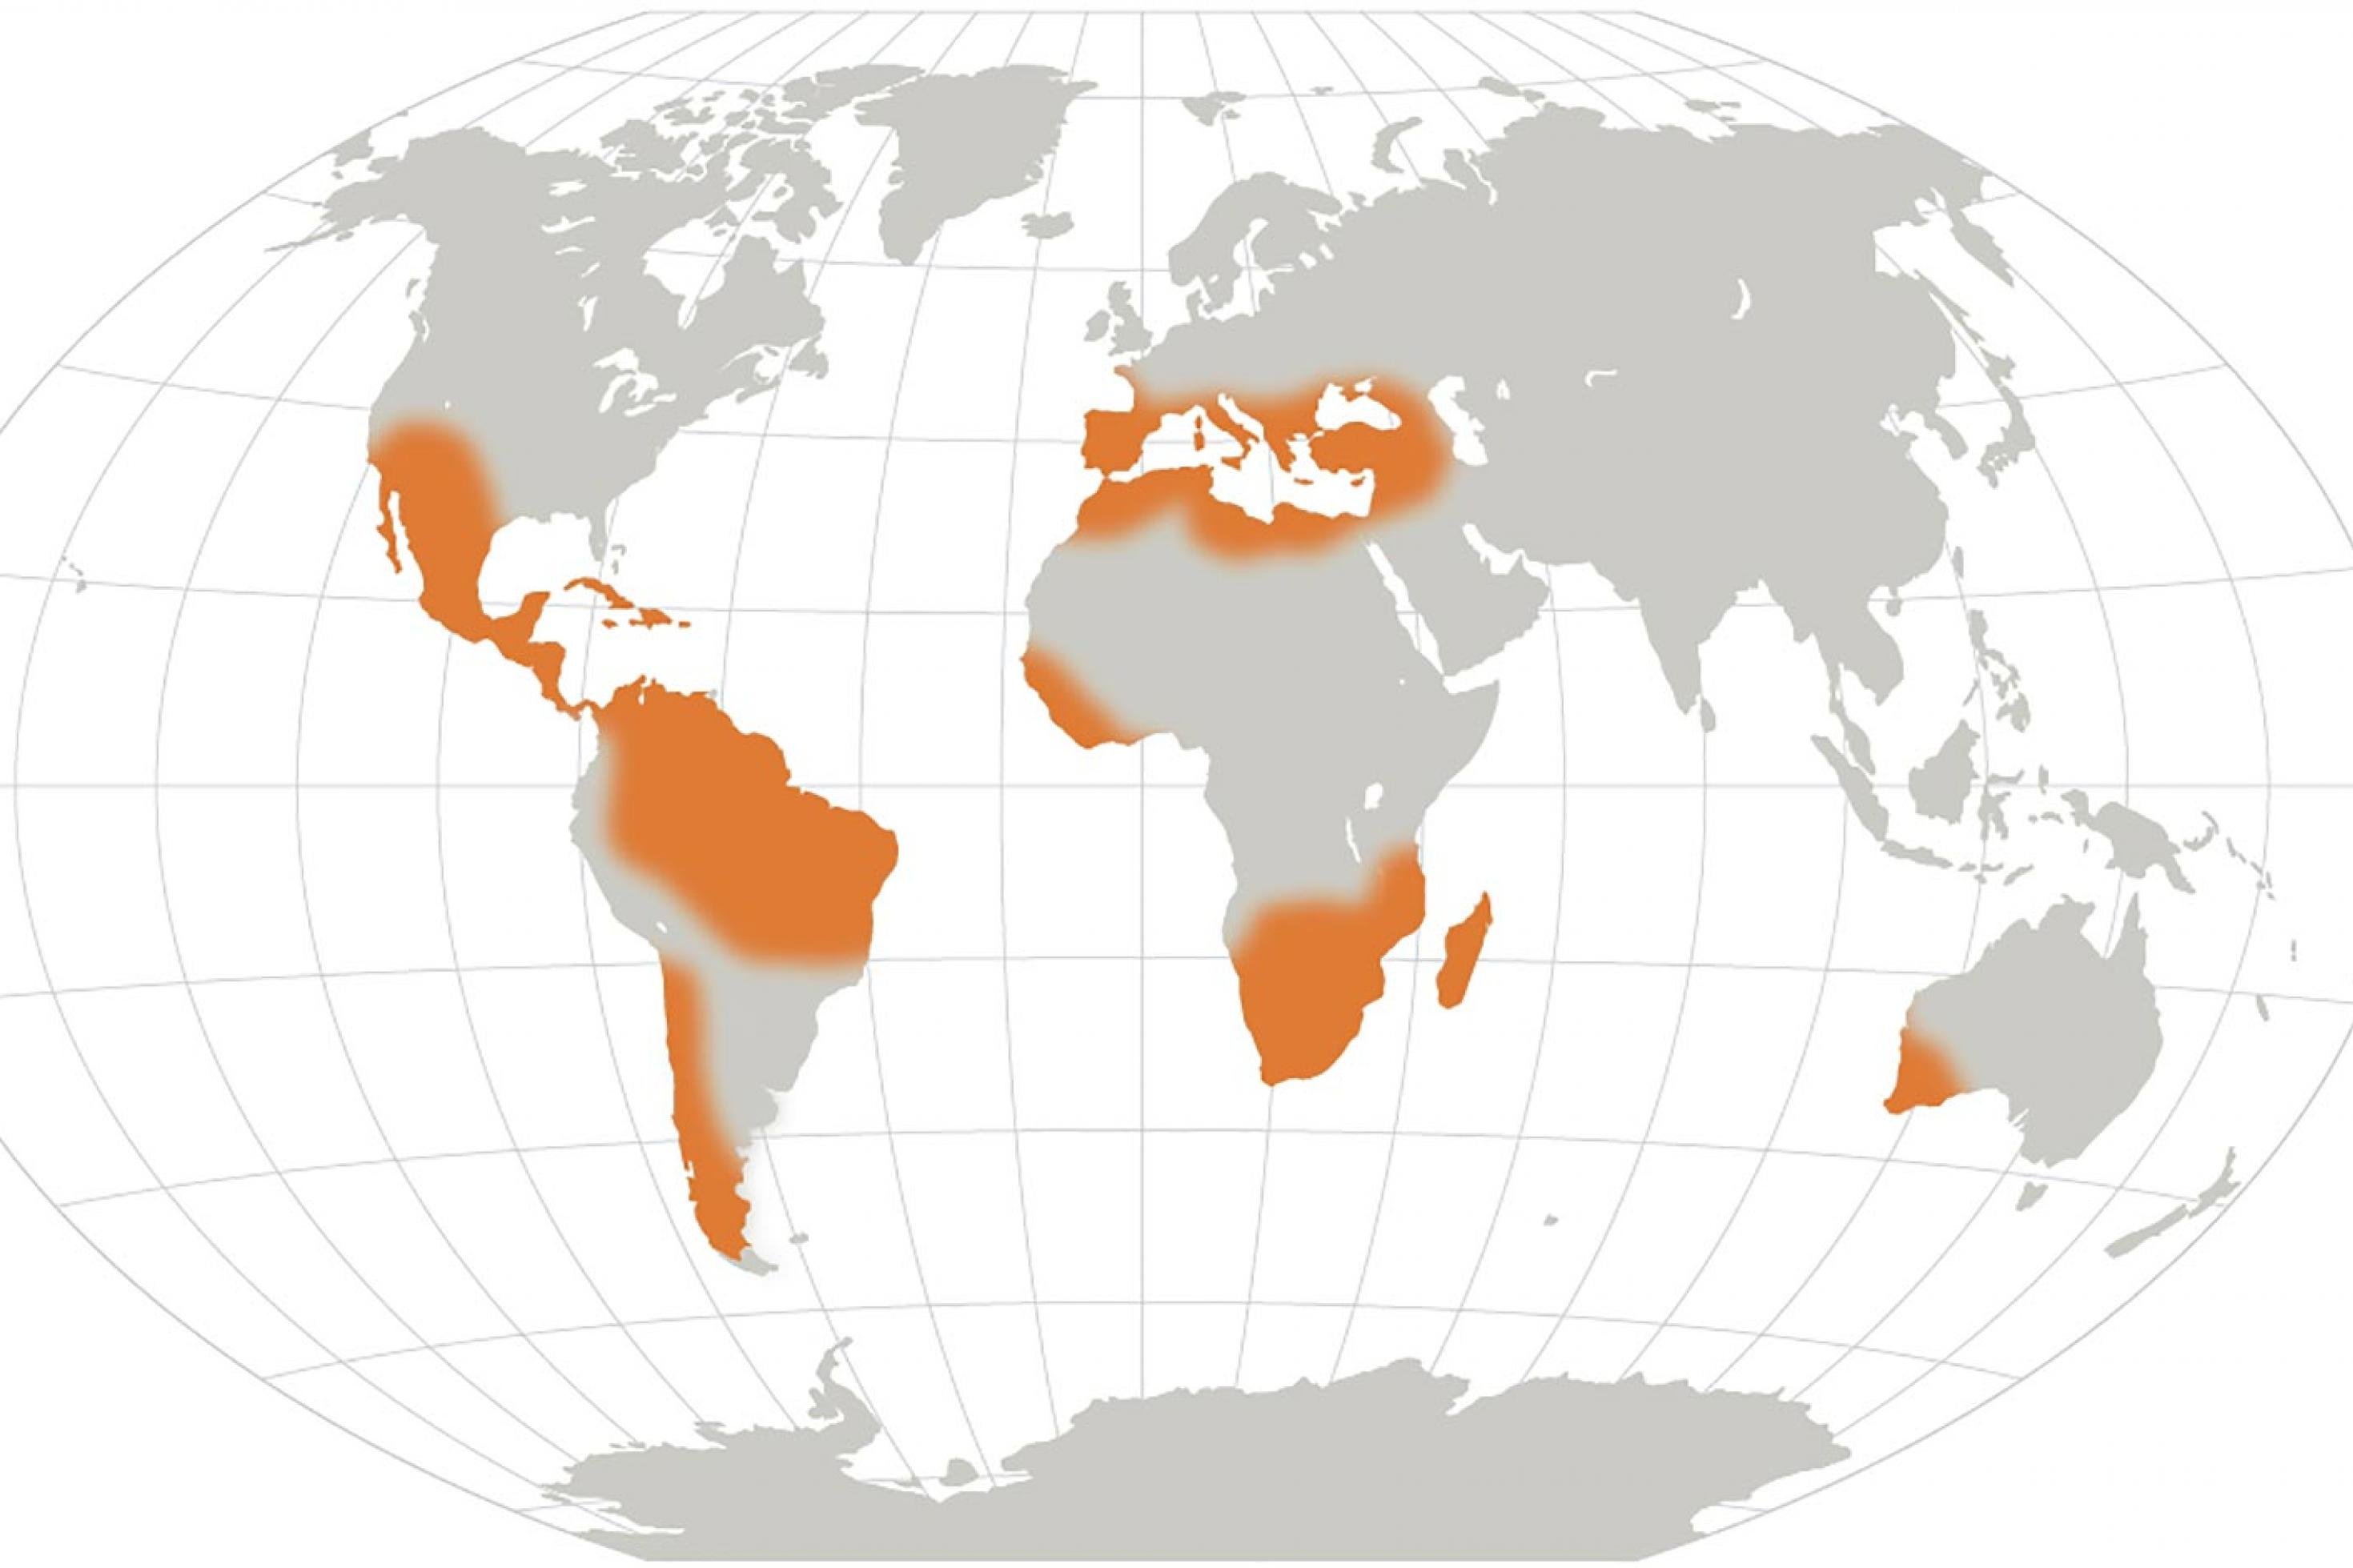 Weltkarte mit orangefarbenen Bereichen vor allem in Mittel- und Südamerika sowie Afrika